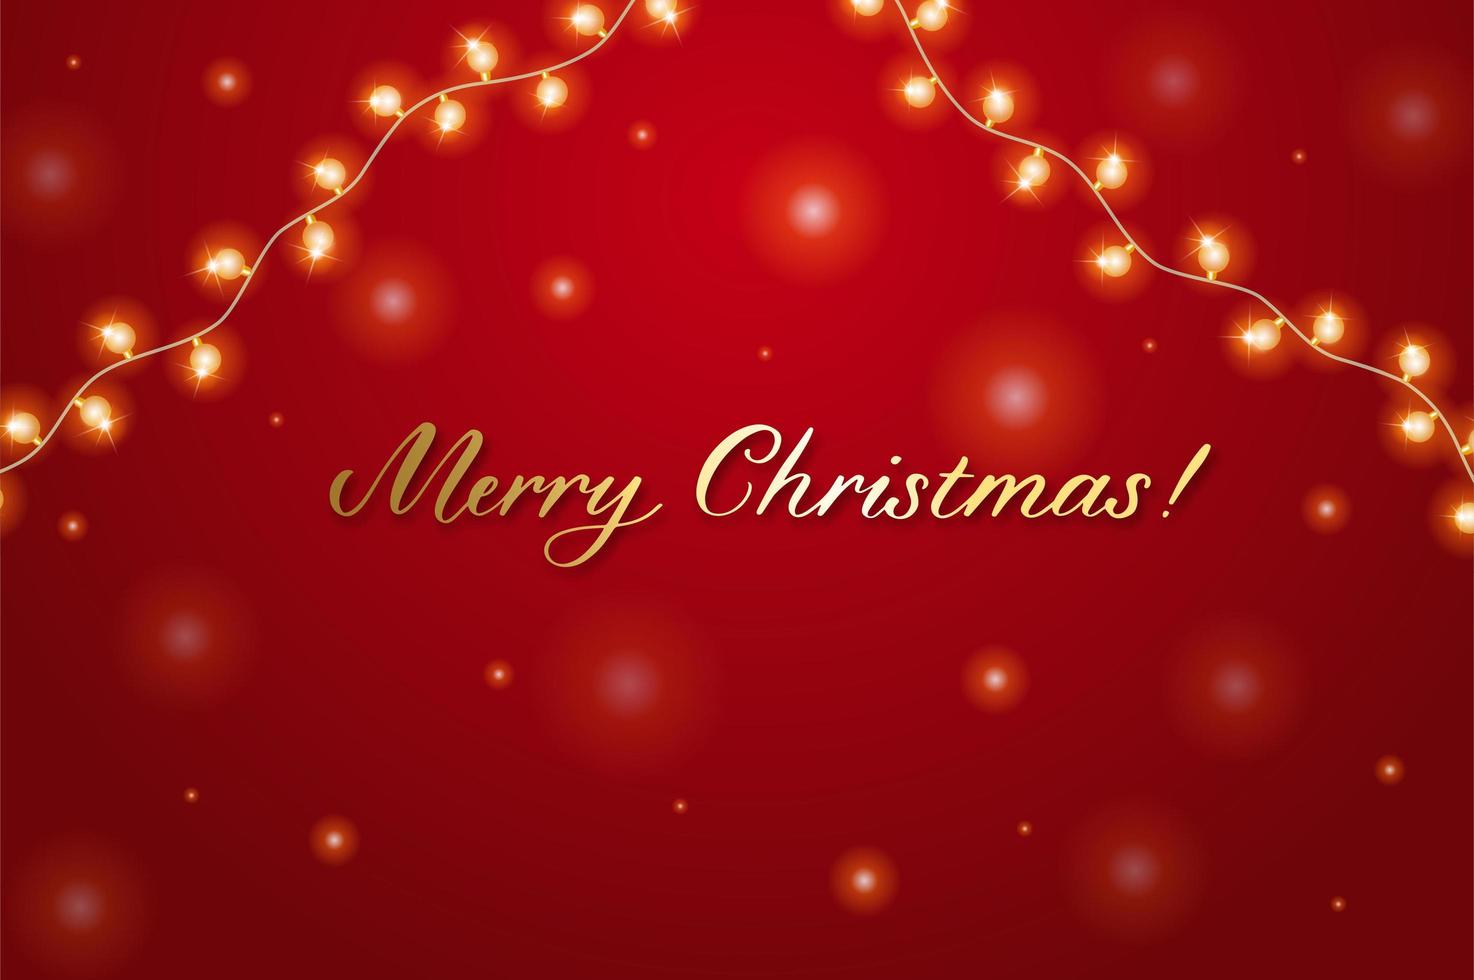 Weihnachtshintergrund mit leuchtender Girlande. frohe weihnachten kartenillustration auf rotem hintergrund. vektor